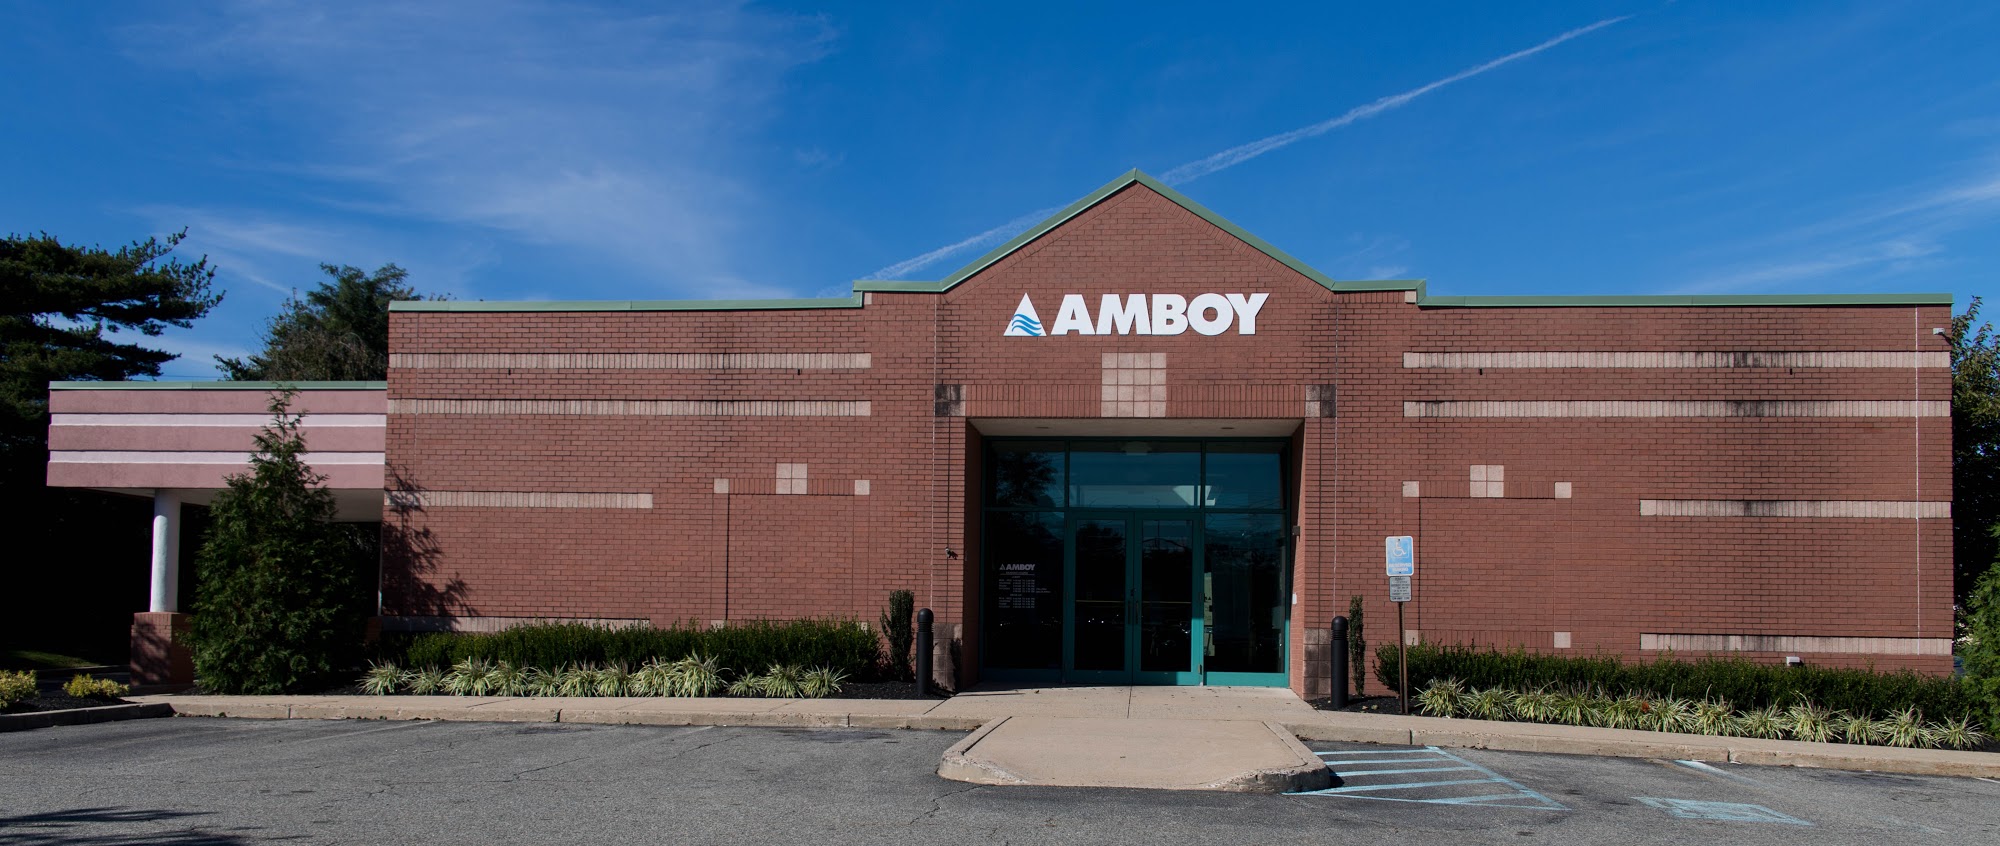 Amboy Bank